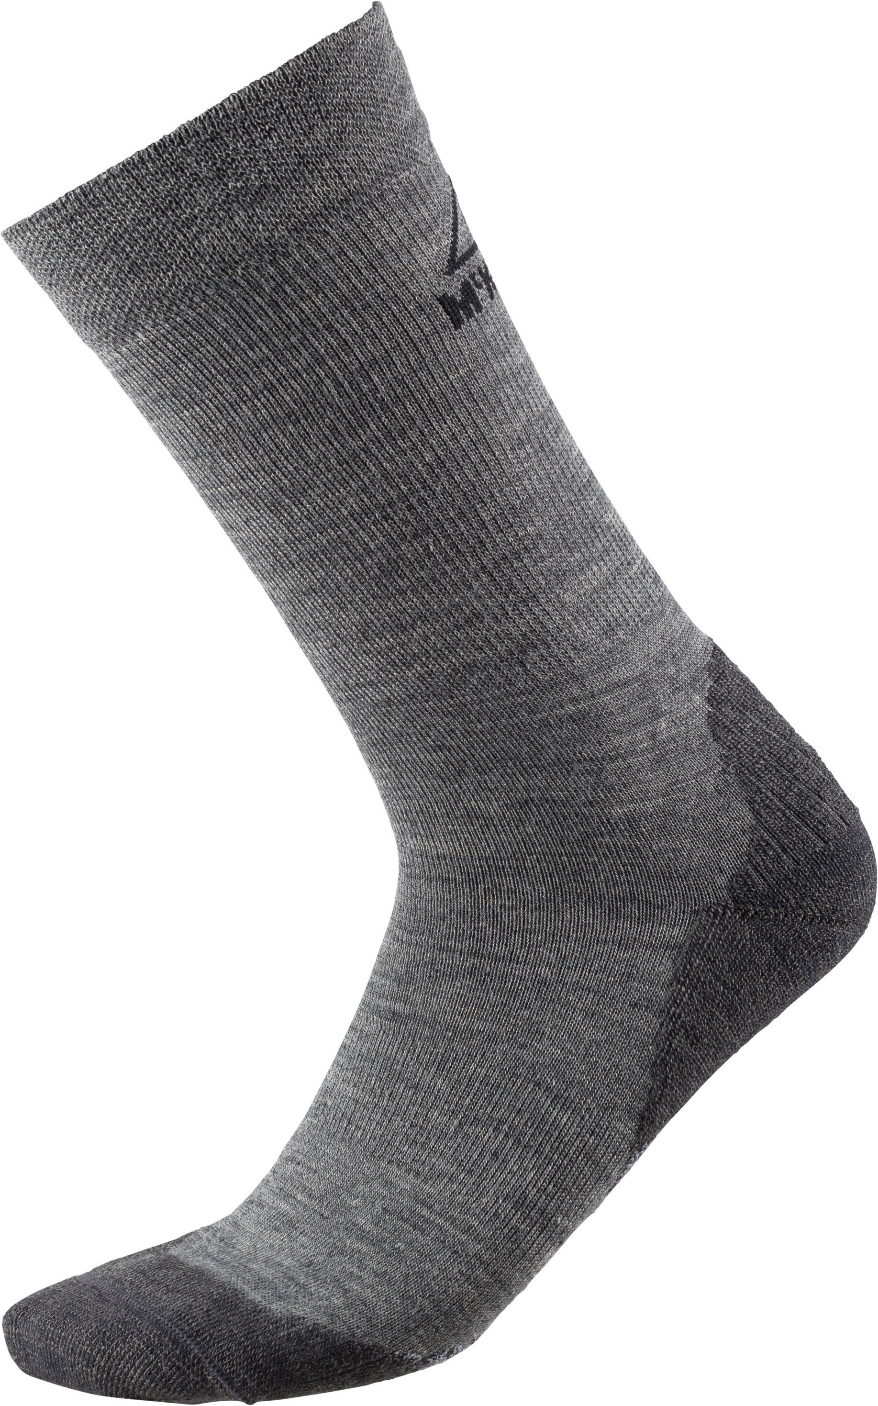 Ponožky McKINLEY Finn Crew Veľkosť: 39-41 EUR